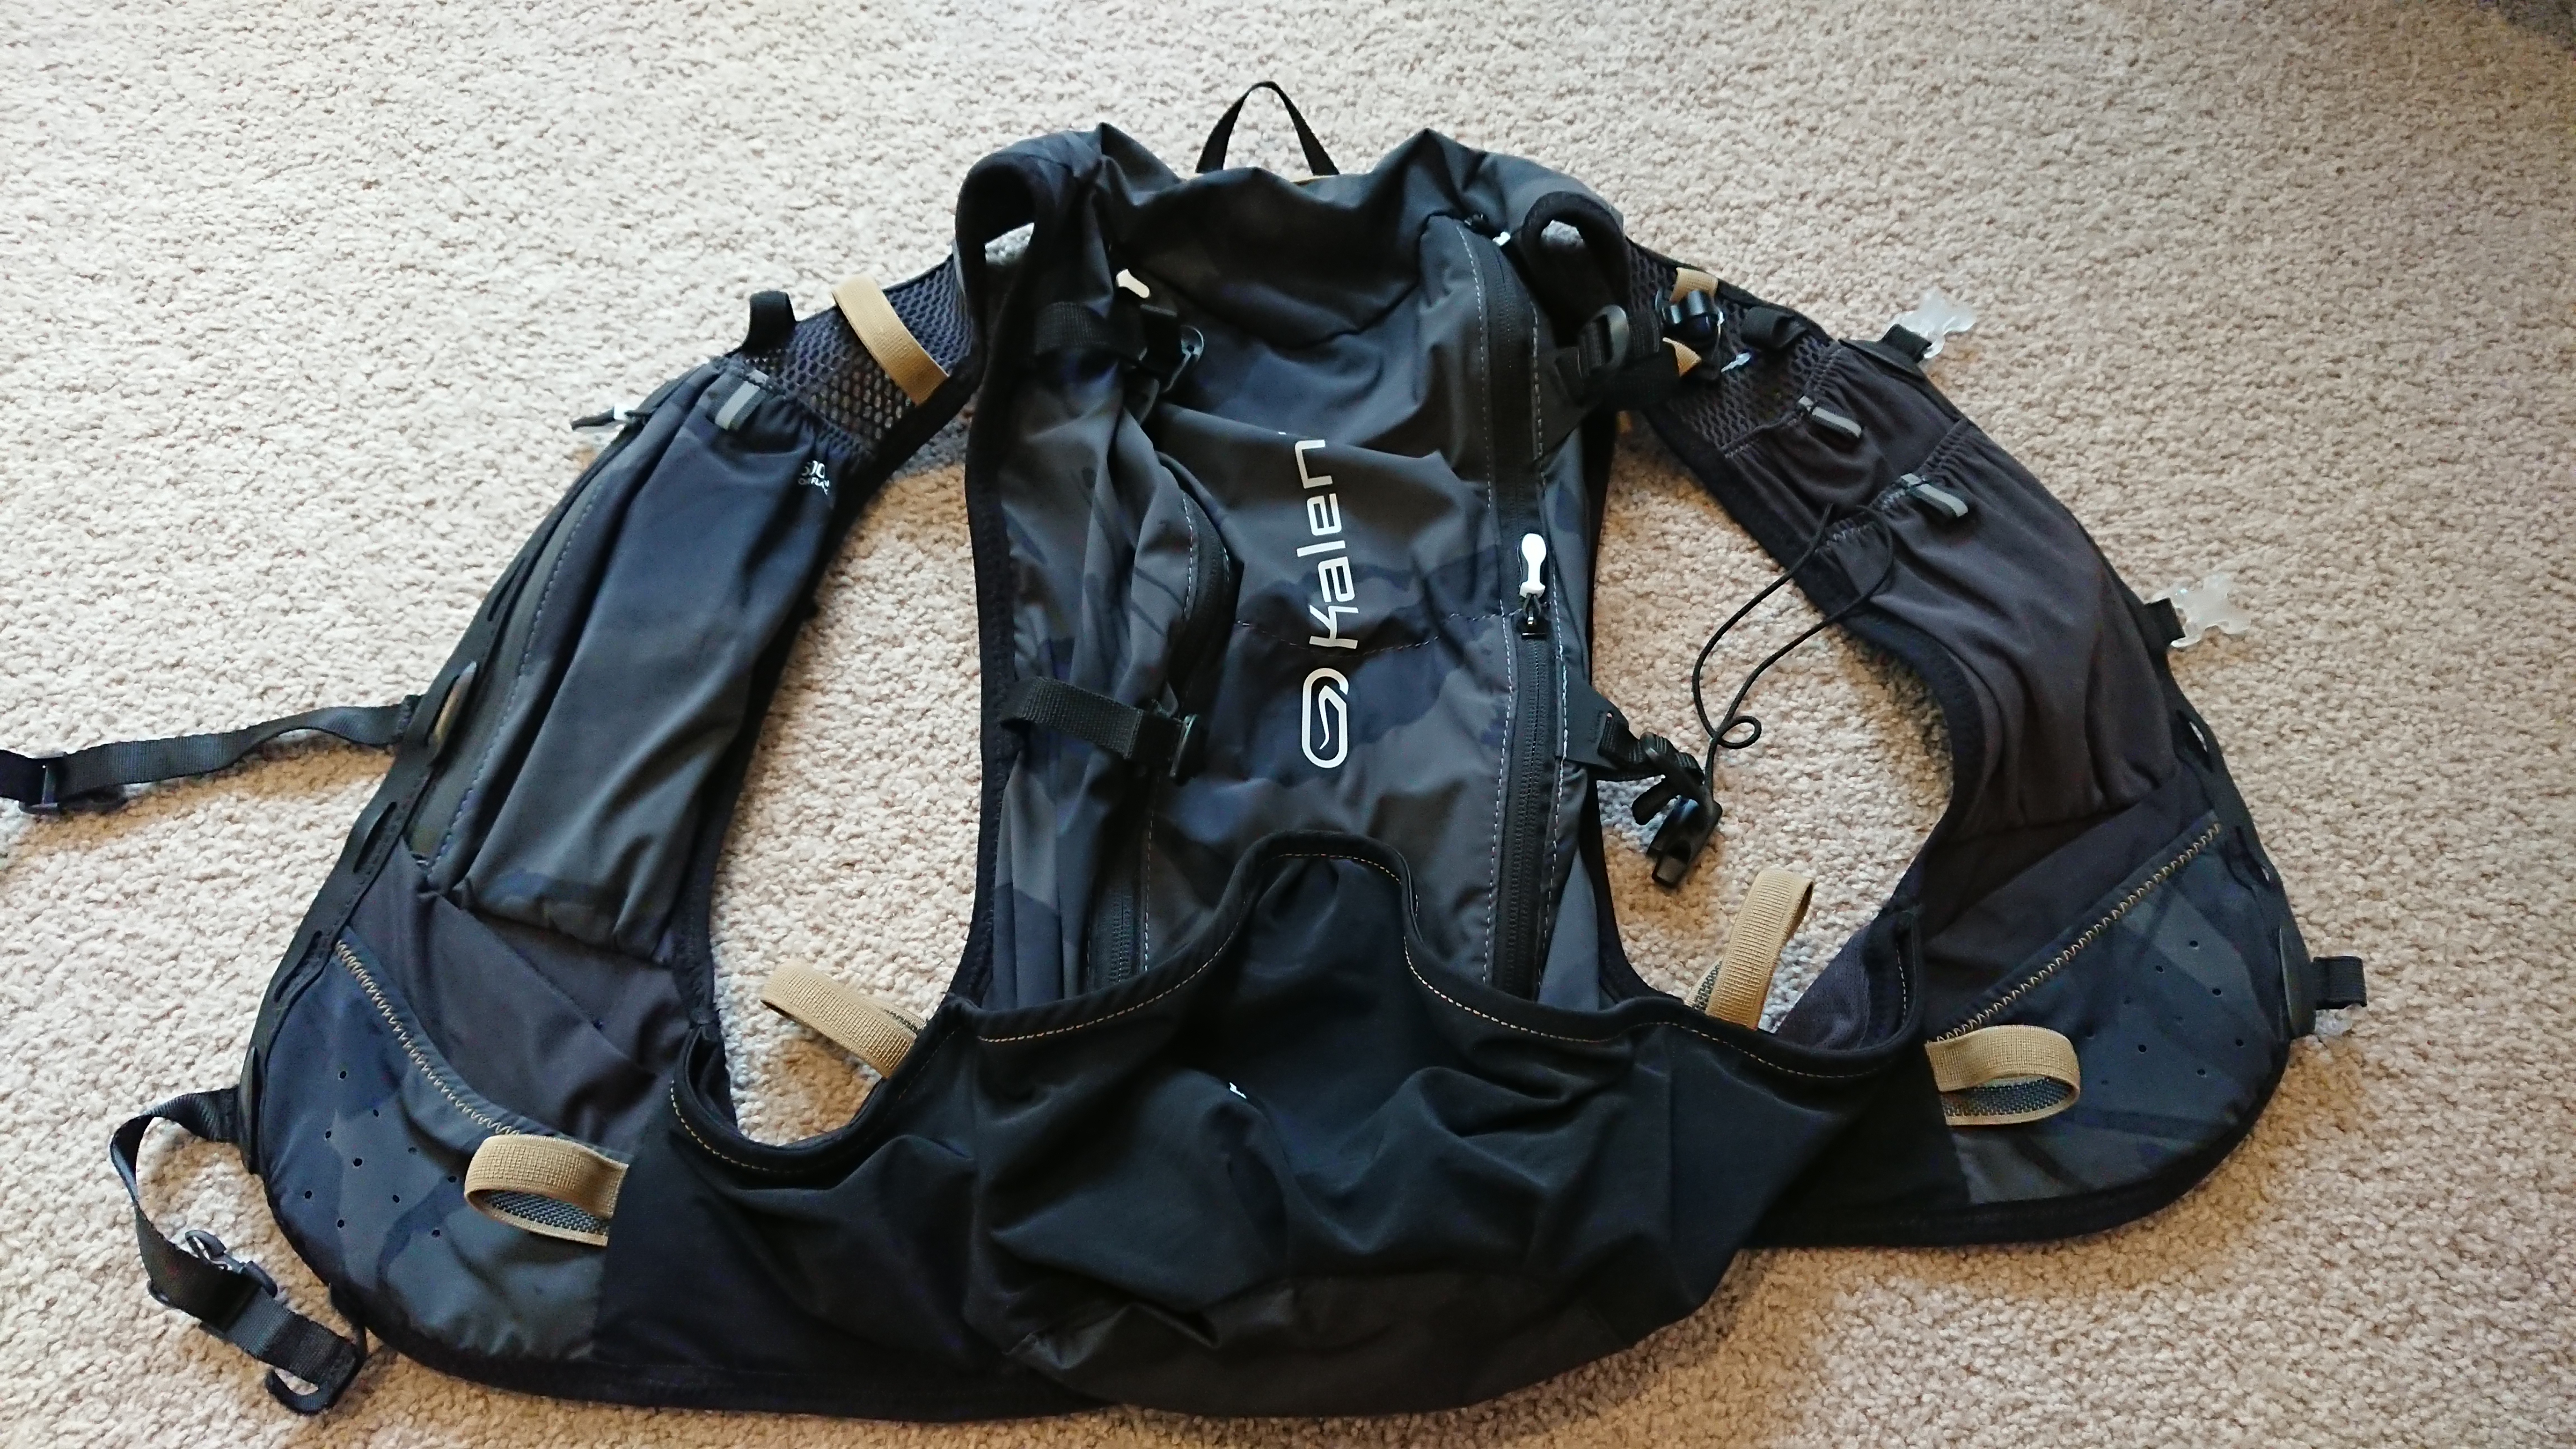 kalenji 15l ultra trail running bag